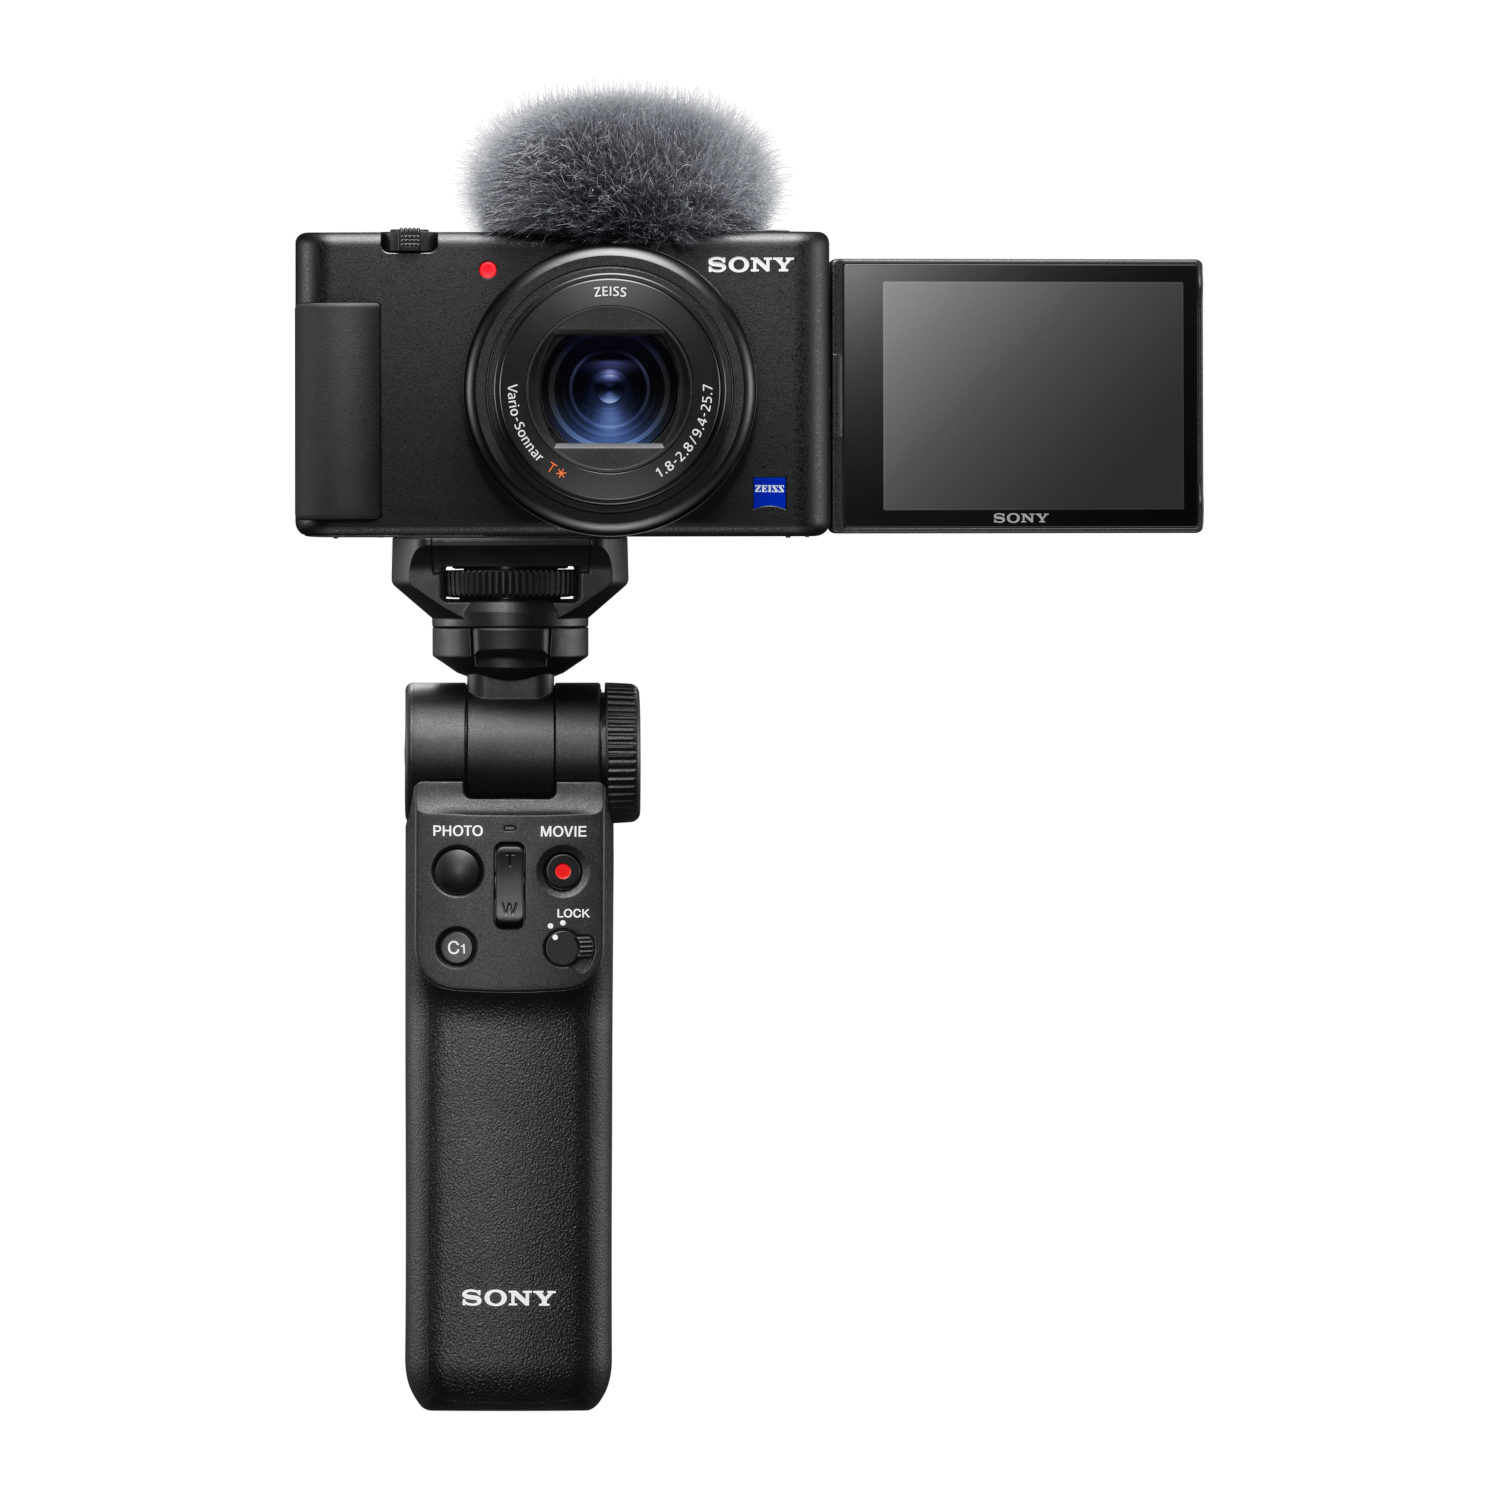 Categorie voordelig munt Sony ZV1 Vlog Camera + Handgreep met draadloze afstandsbediening GP-VPT2BT  - Ringfoto Meppel